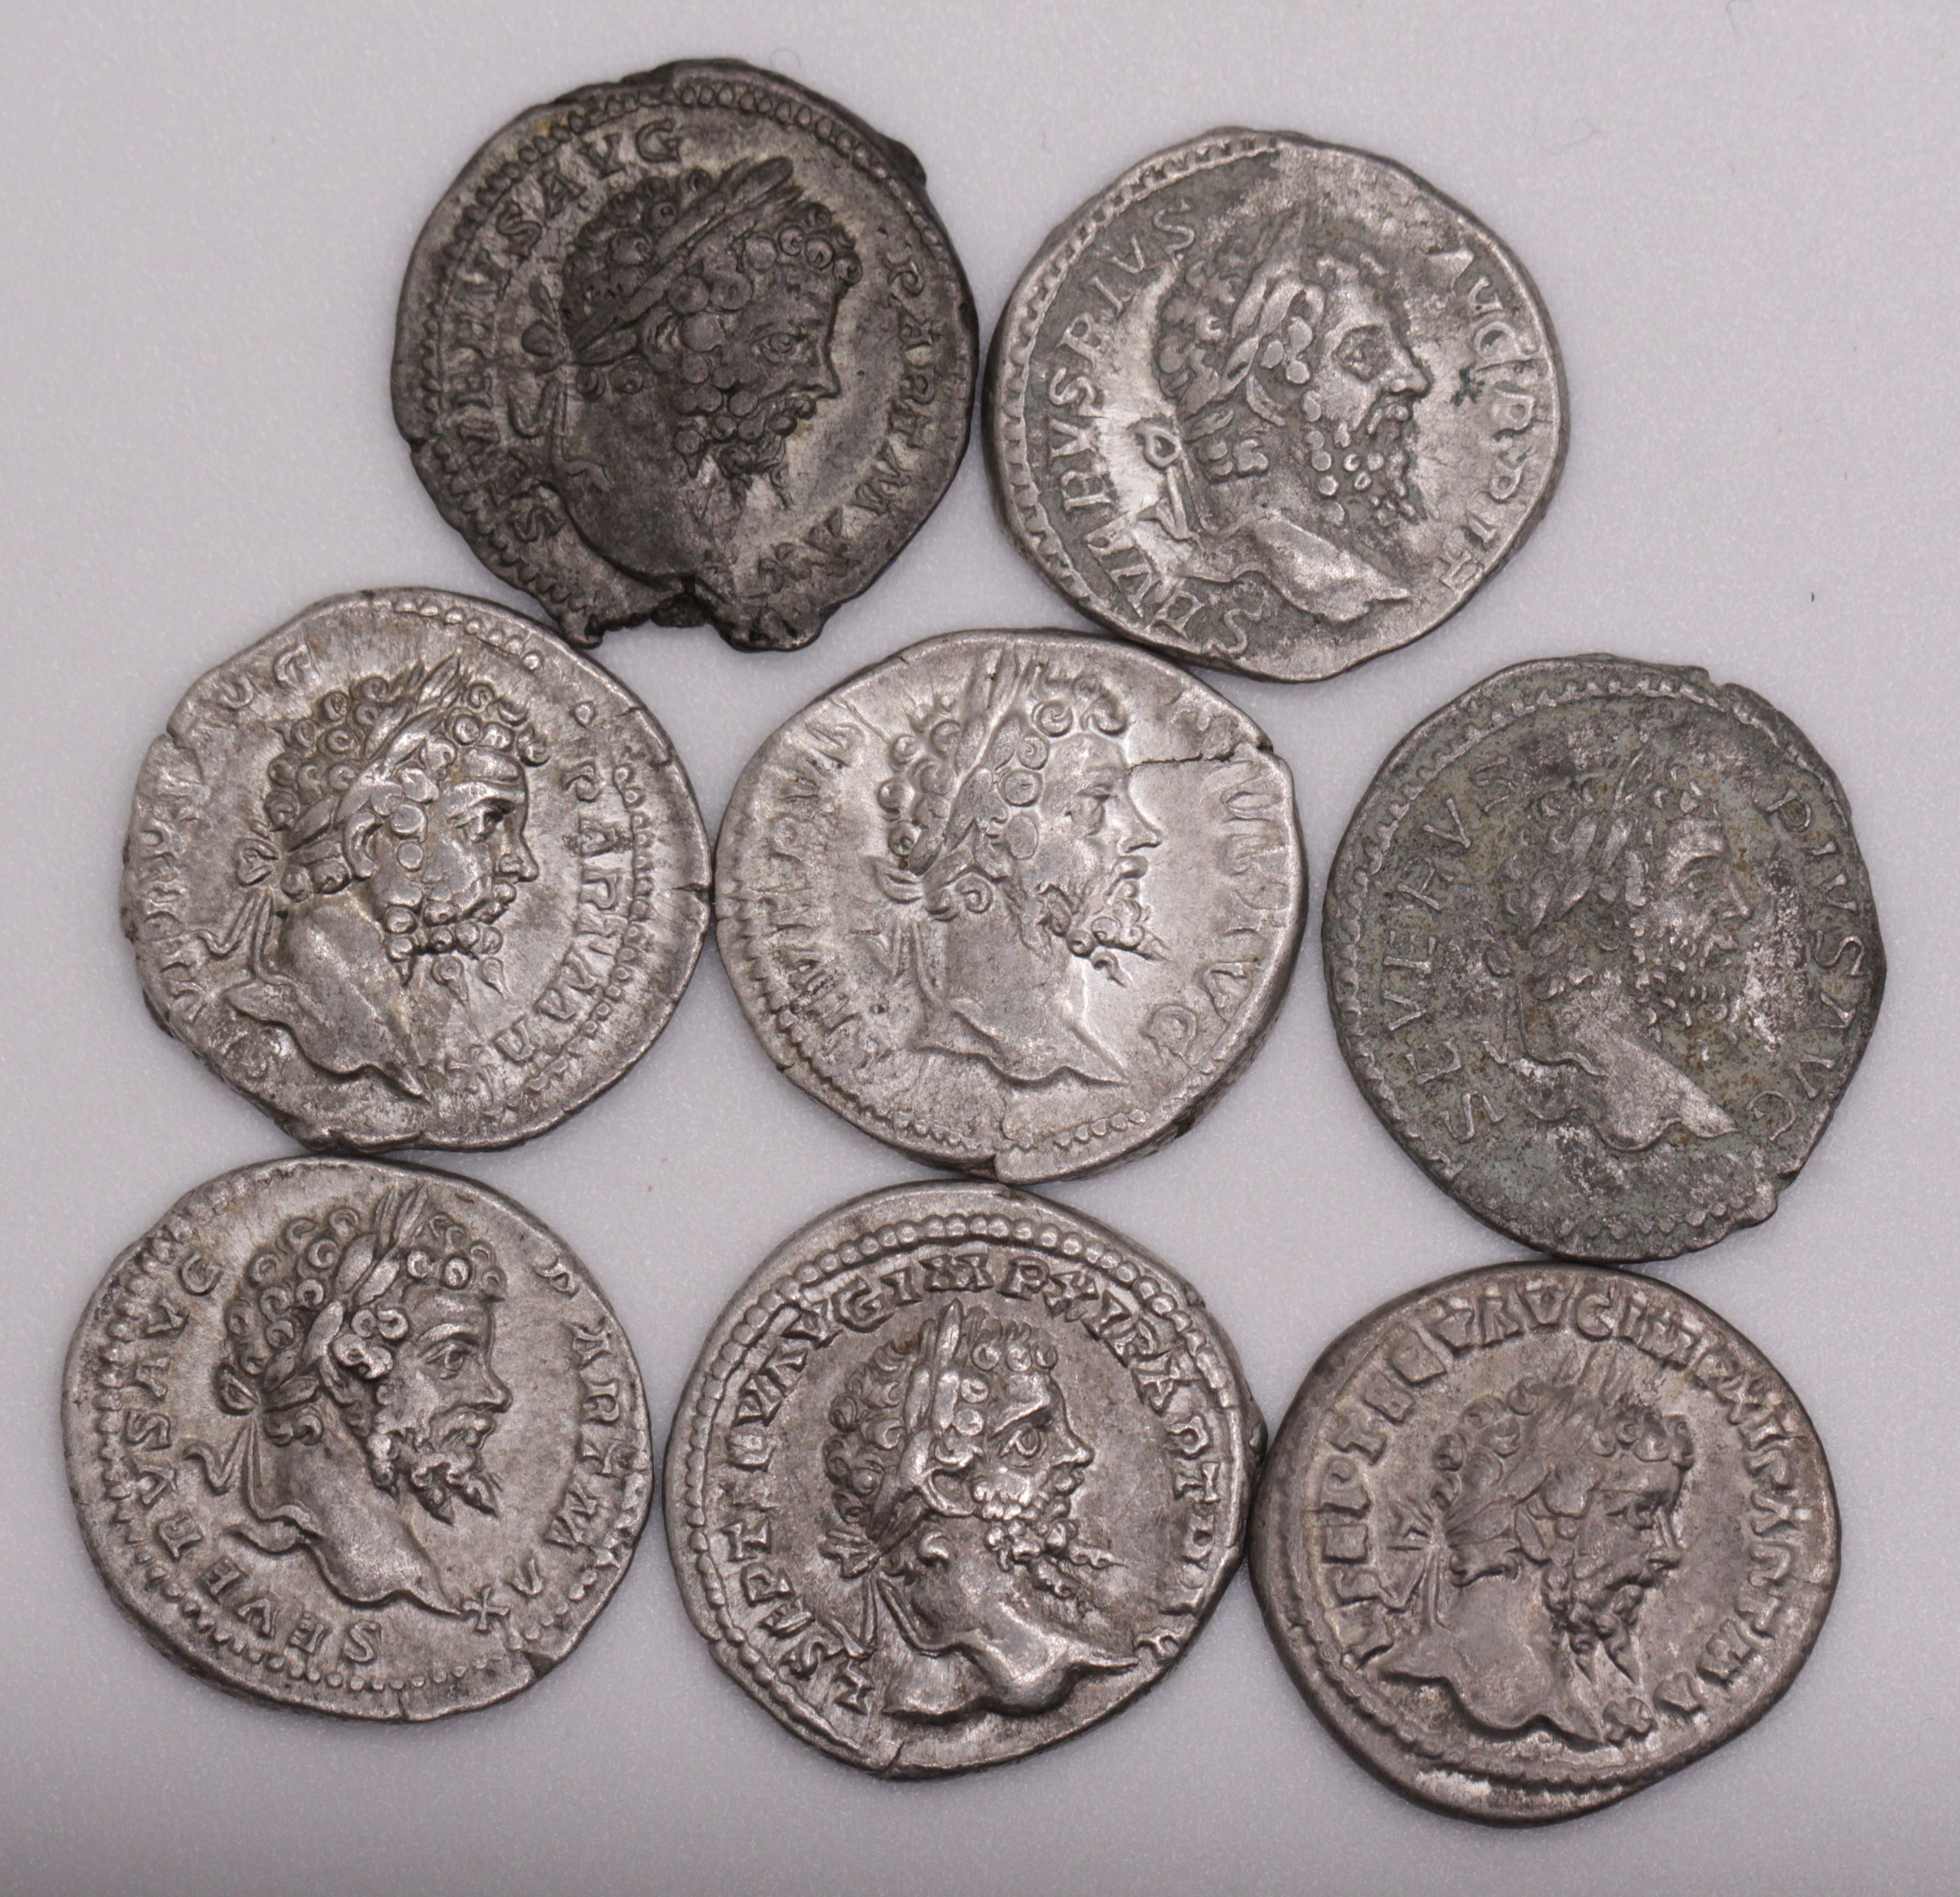  Silver Coins